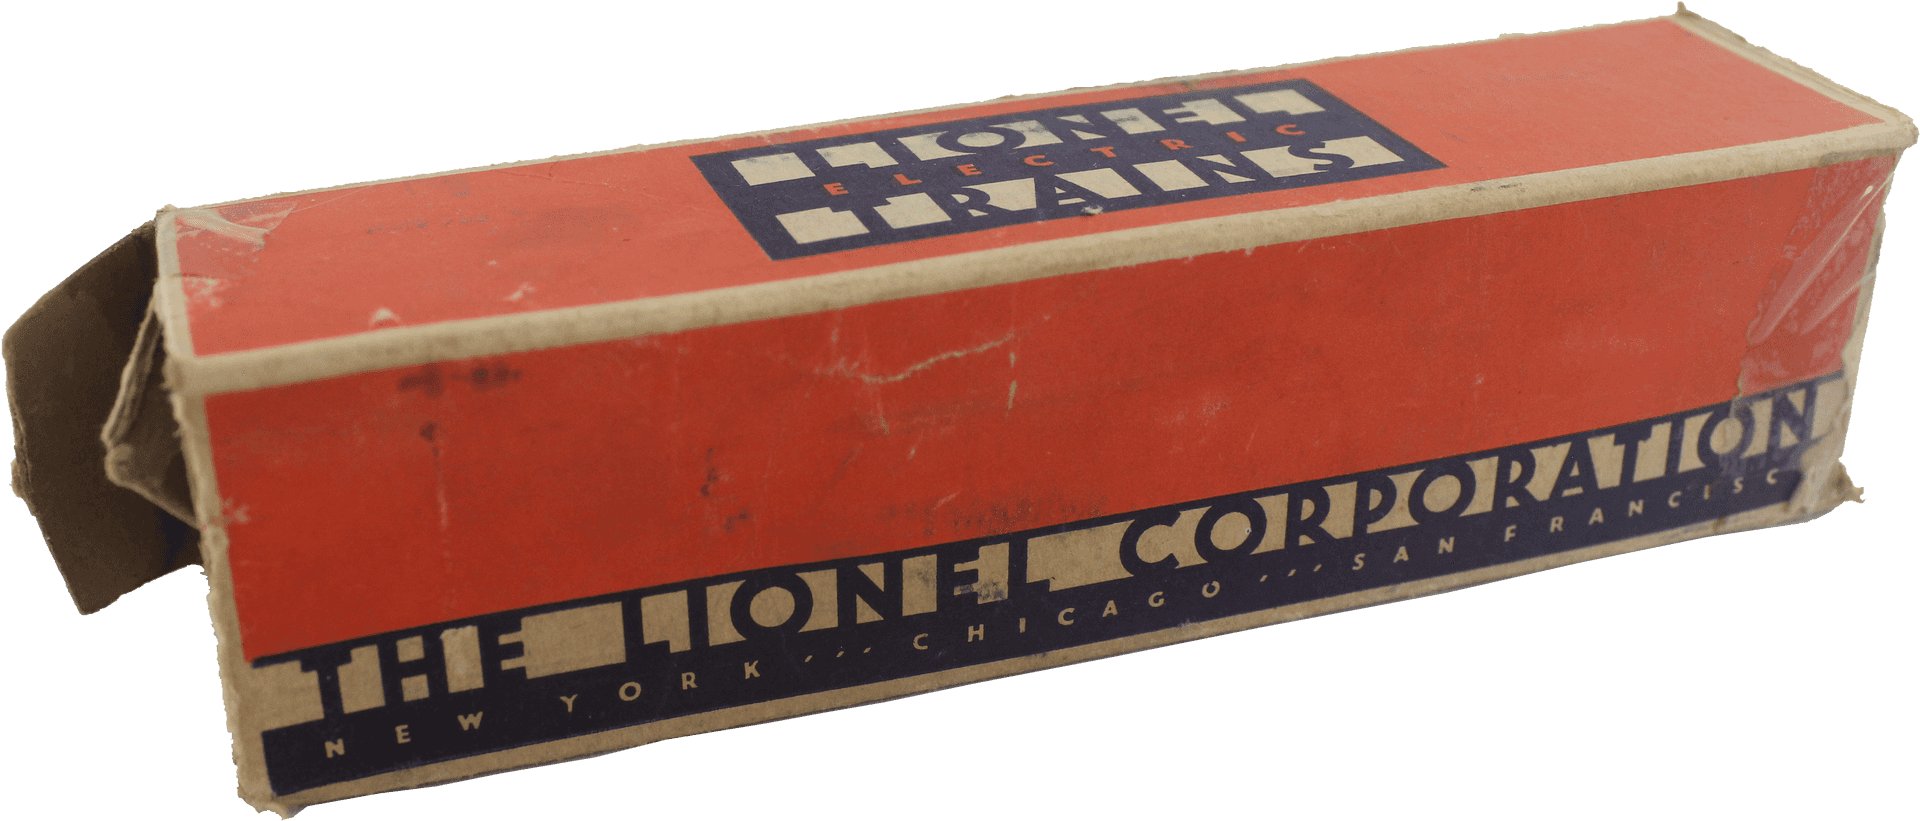 Vintage Lionel Corporation Box PNG